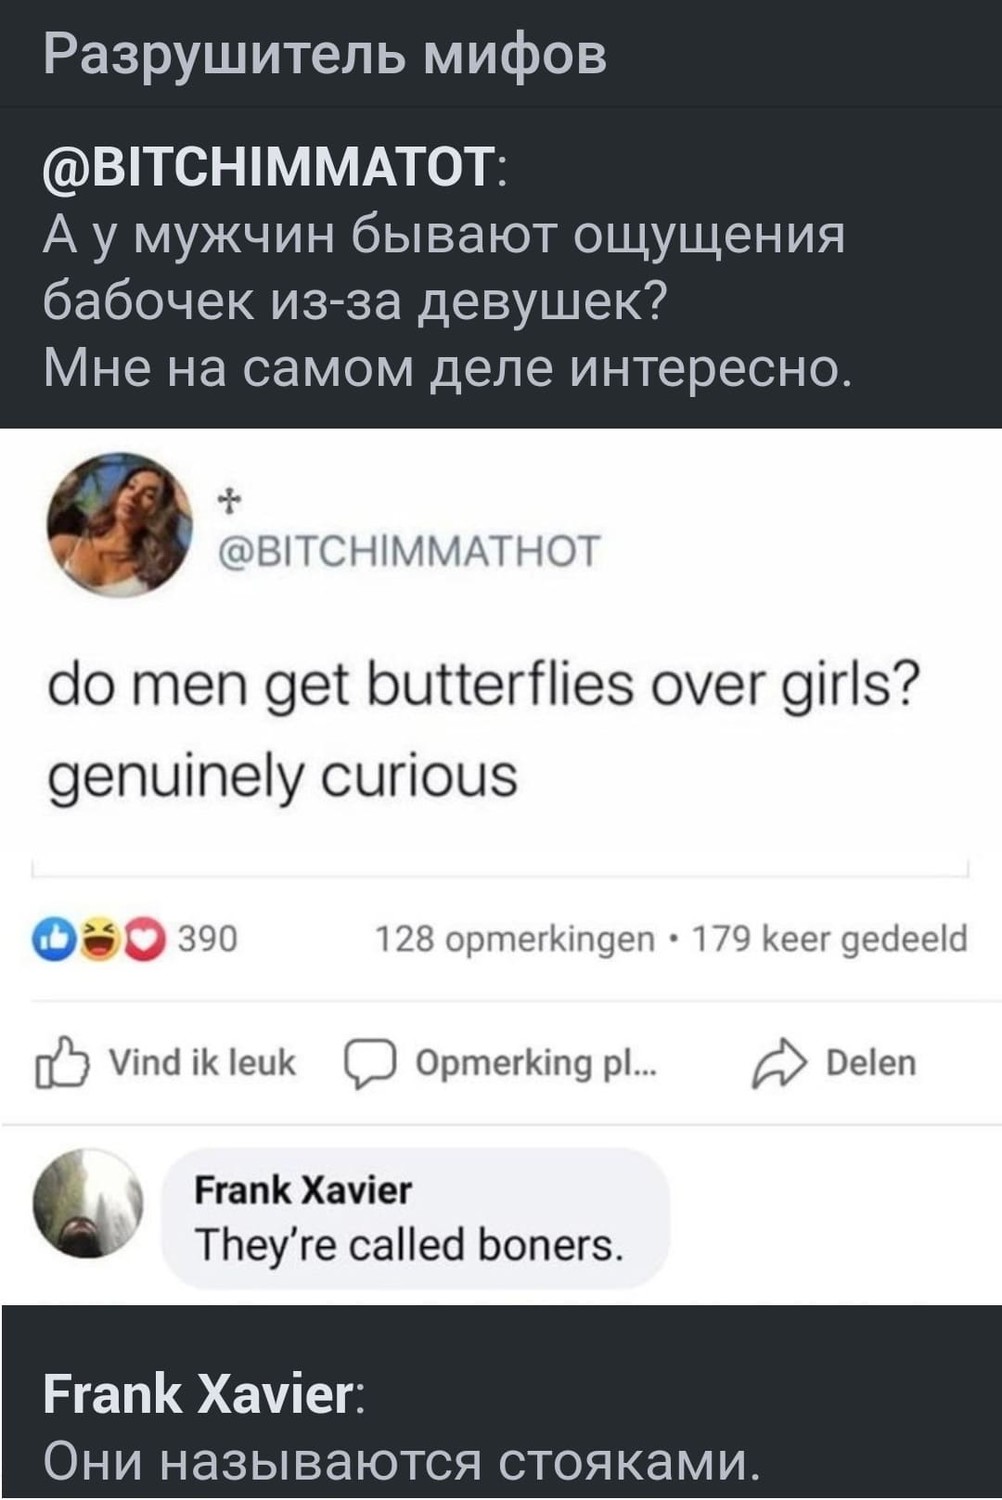 — А у мужчин бывают ощущения бабочек из-за девушек?
Мне на самом деле интересно. (eng: do men get butterflies over girls? Genuinely curious).
Frank Xavier:
— Они называются стояками. (eng:They're called boners).